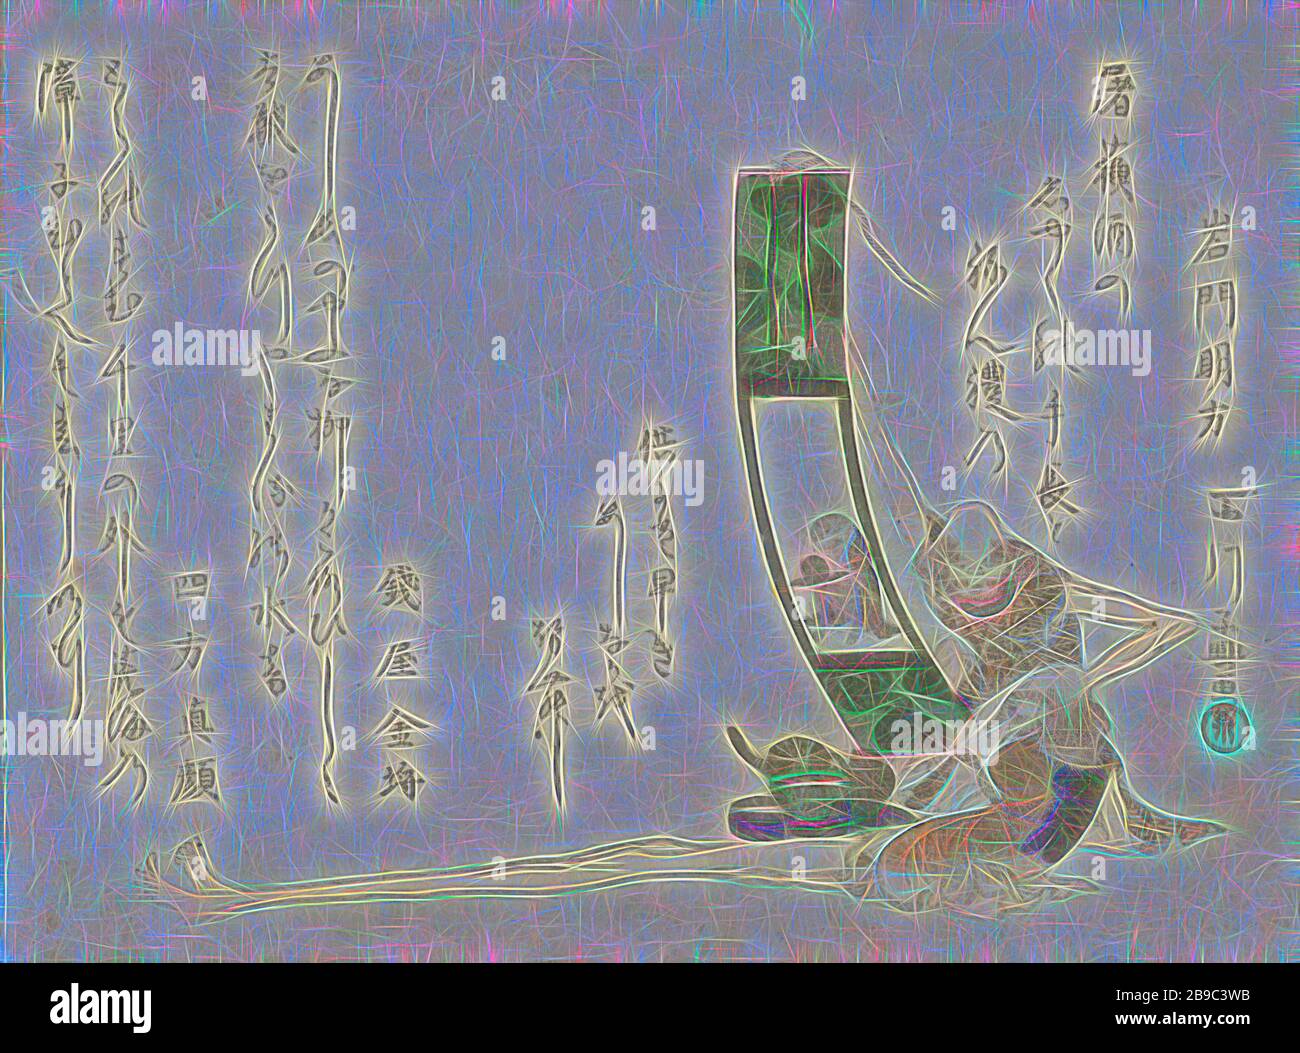 Long leg e Long Arm, due figure leggendarie sono raffigurate con tre poesie corrispondenti. Una figura con le gambe lunghe (ashinaga) ammira un dipinto di una scimmia, l'altra con le braccia lunghe (tenaga) tiene un vassoio con una pesca. Tre poesie, scimmie, scimmie, Momokawa Chôki (citato su oggetto), Giappone, 1800, carta, taglio a colori del legno, h 141 mm × w 188 mm, Reimagined by Gibon, disegno di calore allegro di luminosità e raggi di luce radianza. Arte classica reinventata con un tocco moderno. La fotografia ispirata al futurismo, che abbraccia l'energia dinamica della tecnologia moderna, del movimento, della velocità e rivoluziona la cultura. Foto Stock